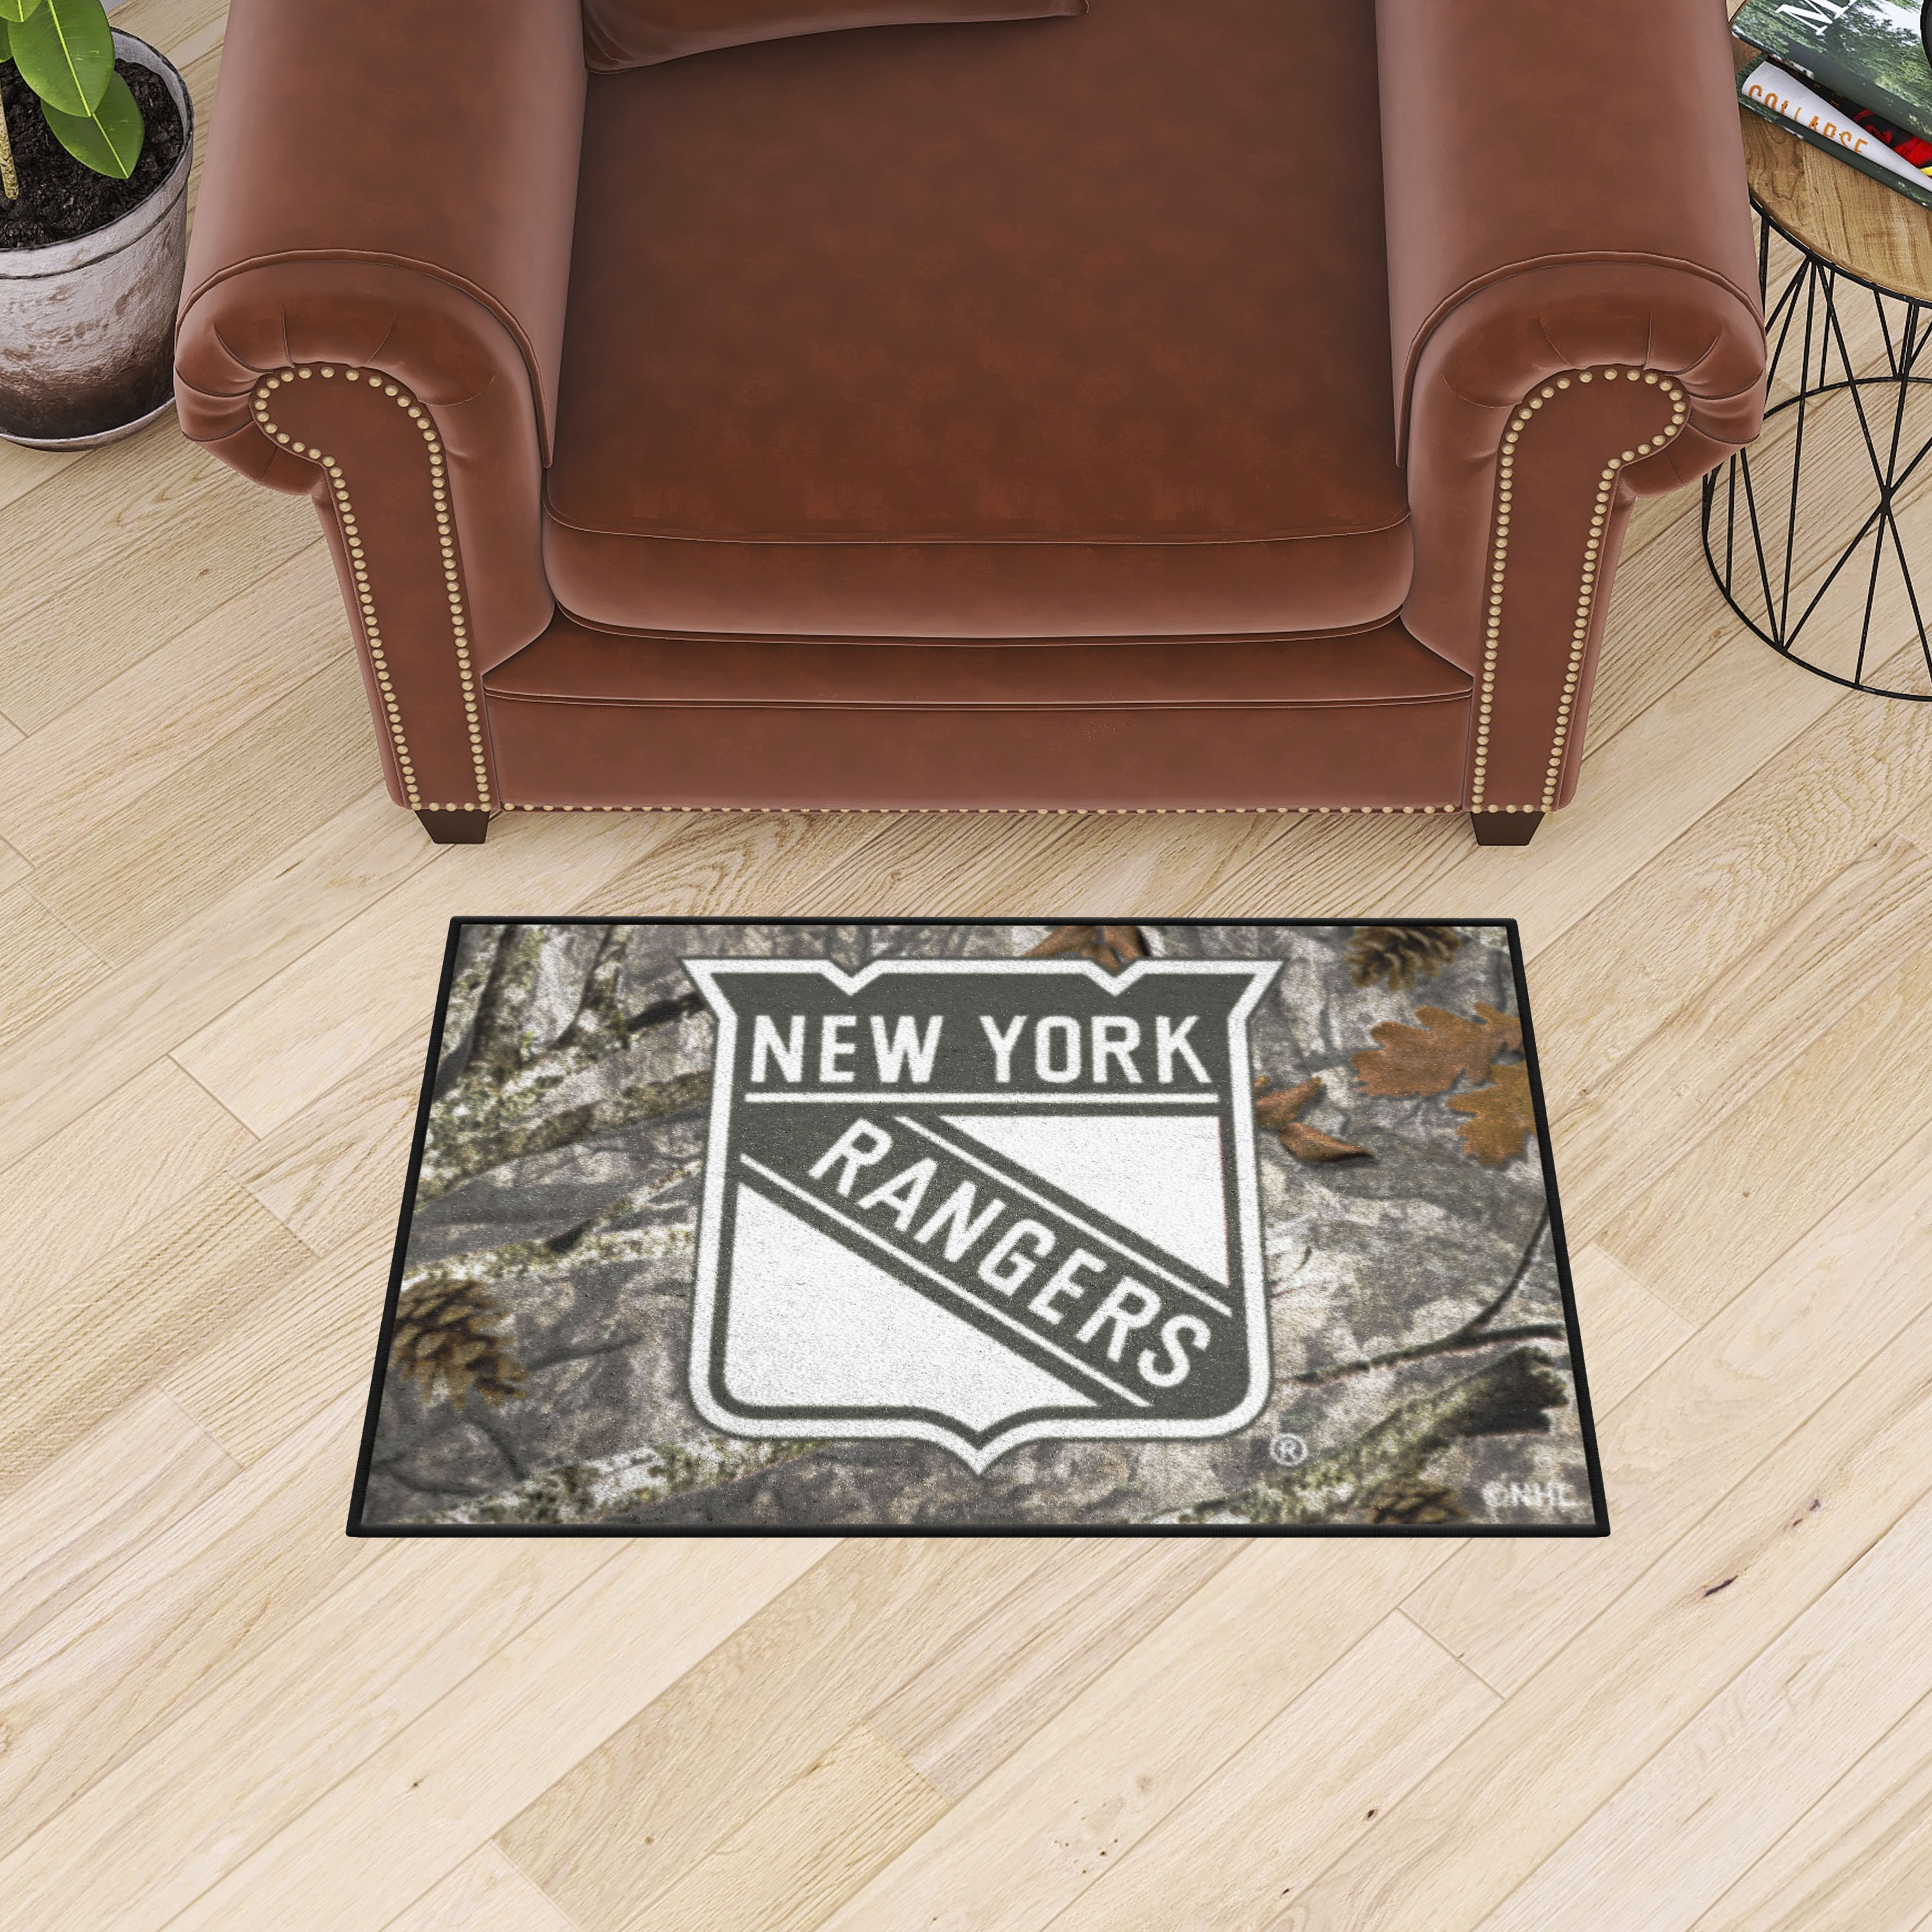 New York Rangers Camo Starter Doormat - 19 x 30